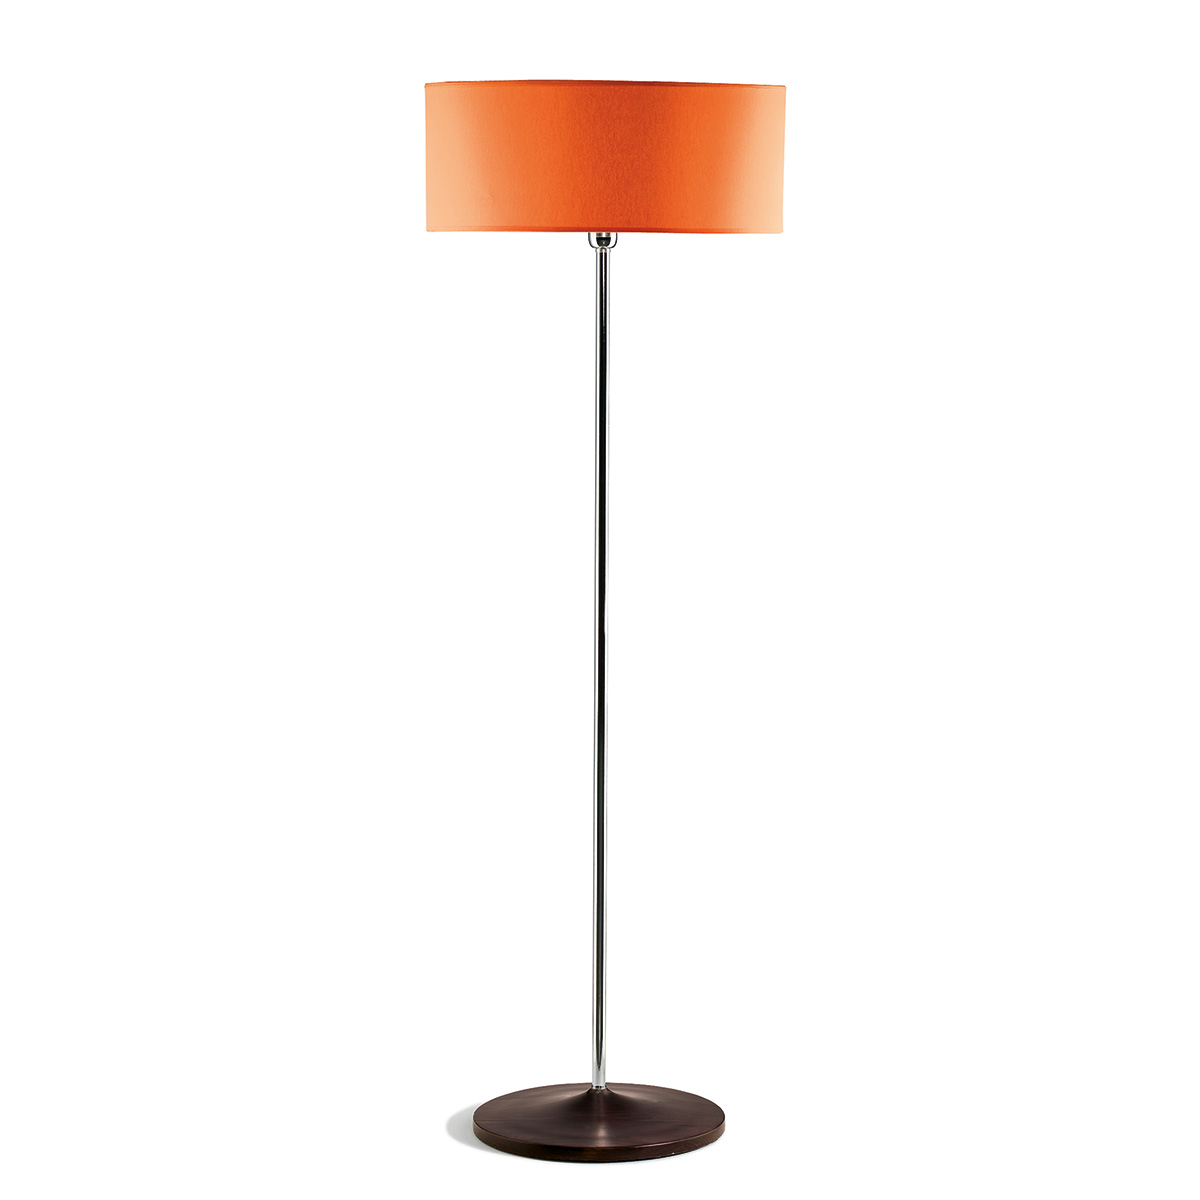 Φωτιστικό δαπέδου με πορτοκαλί καπέλο DISCO ZEN floor lamp with orange shade